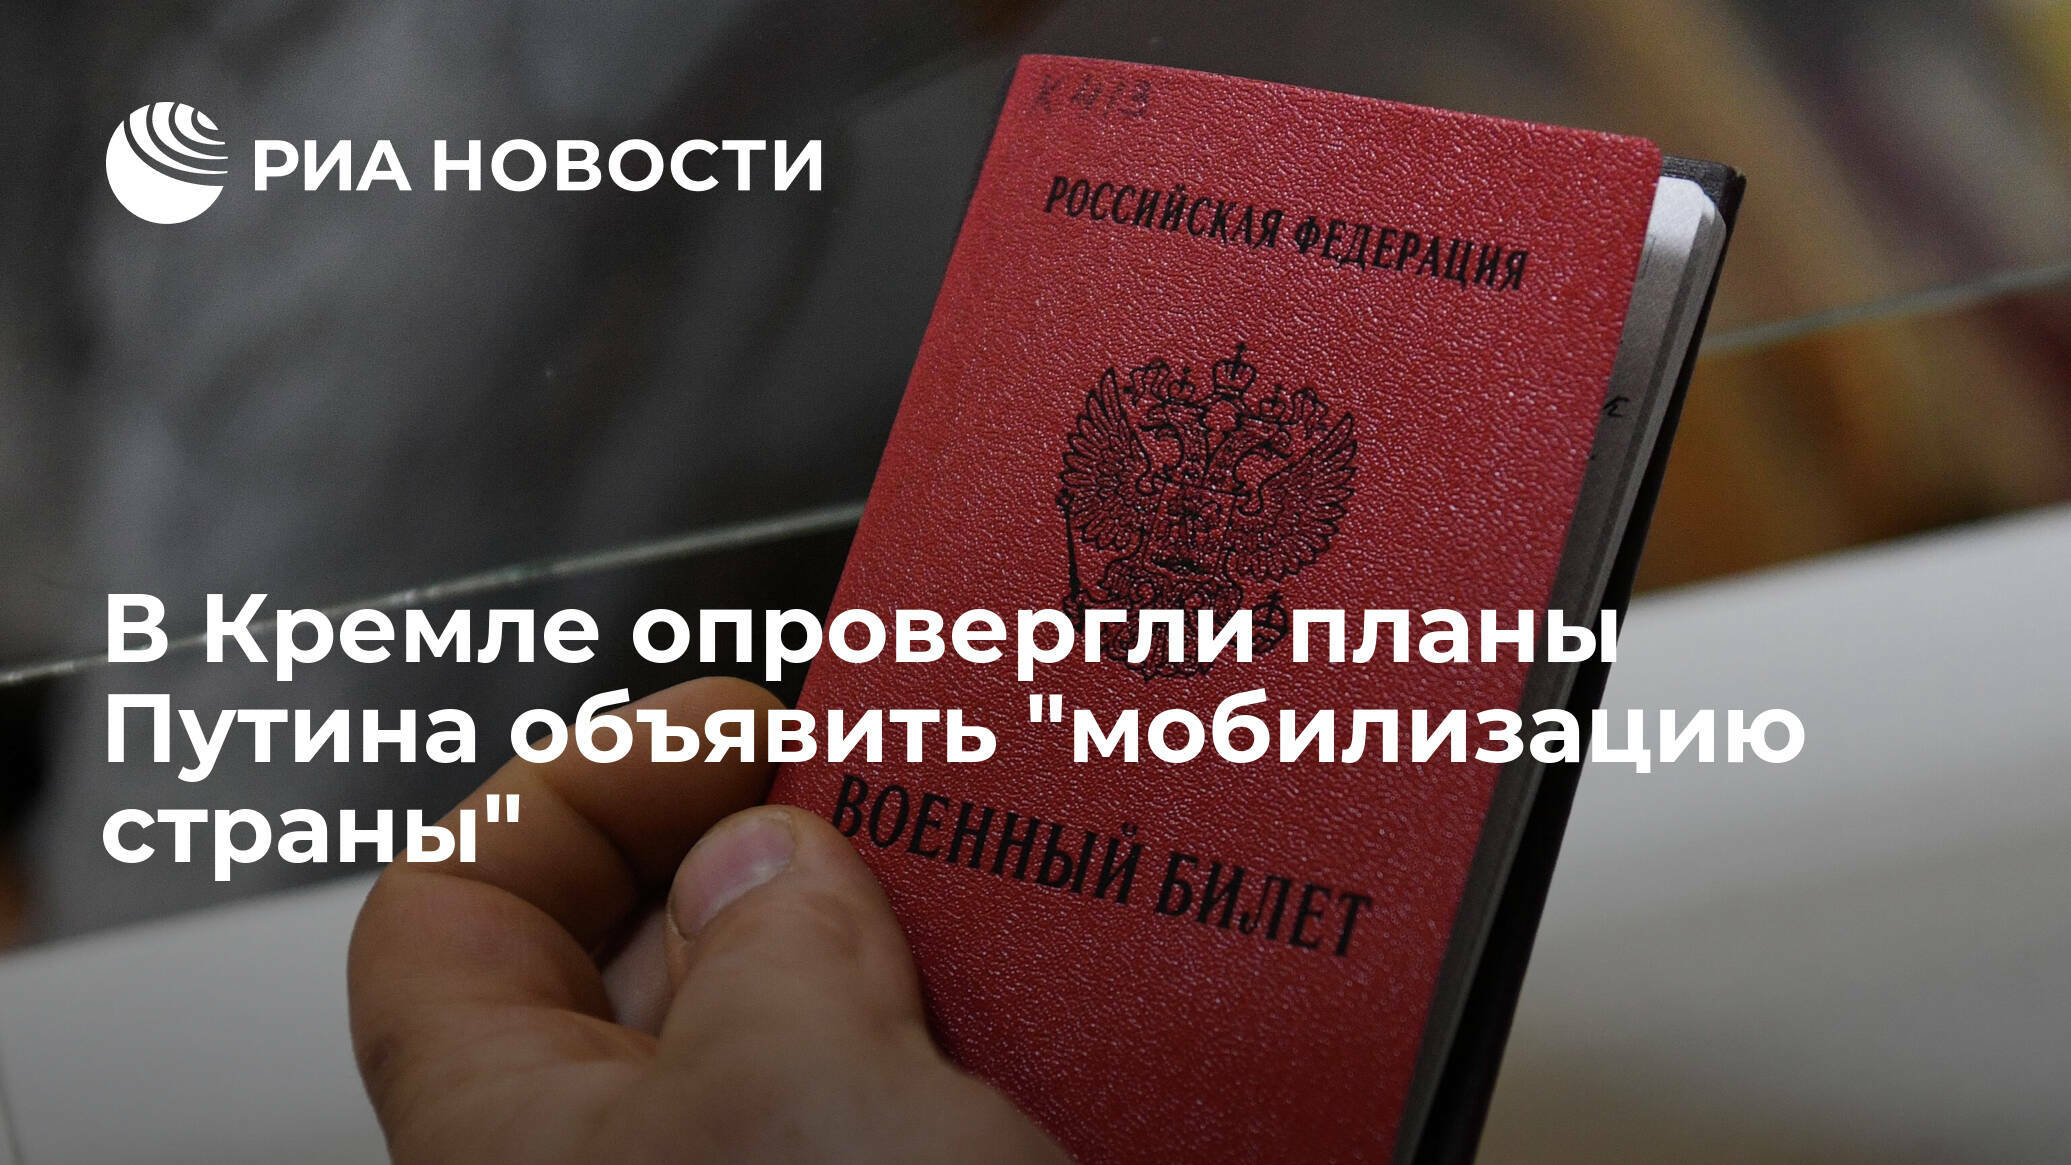 В Кремле опровергли сообщения СМИ о планируемой "мобилизации страны"